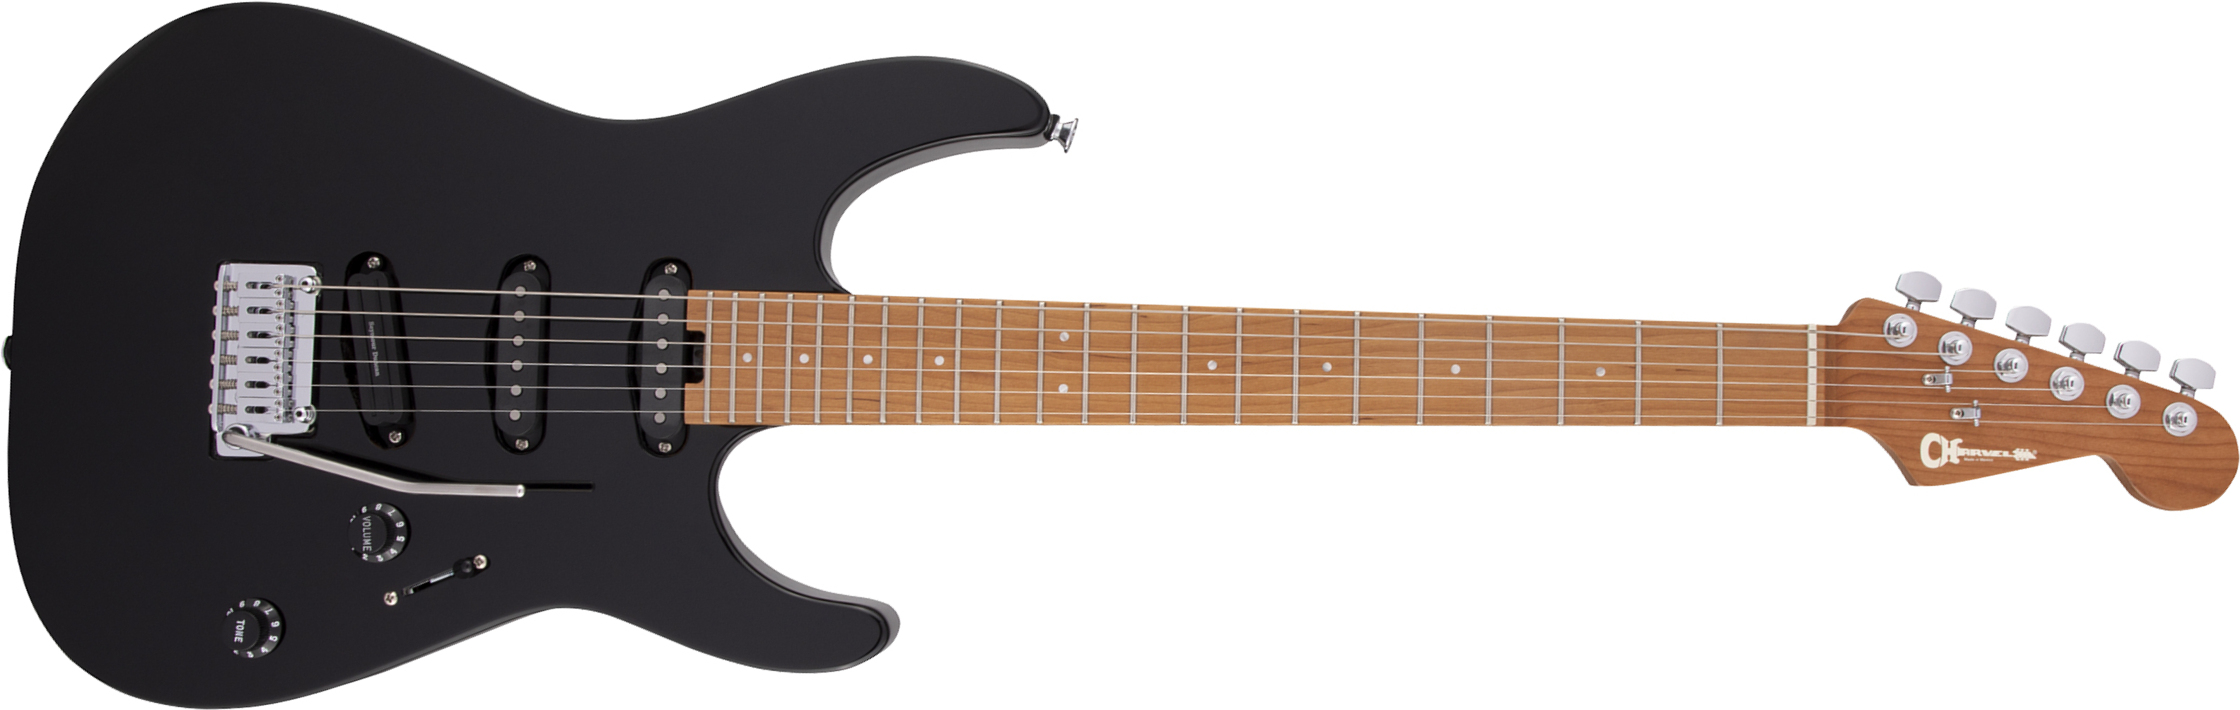 Charvel Dinky Dk22 Sss 2pt Cm Pro-mod 3s Seymour Duncan Trem Mn - Gloss Black - Guitarra eléctrica con forma de str. - Main picture